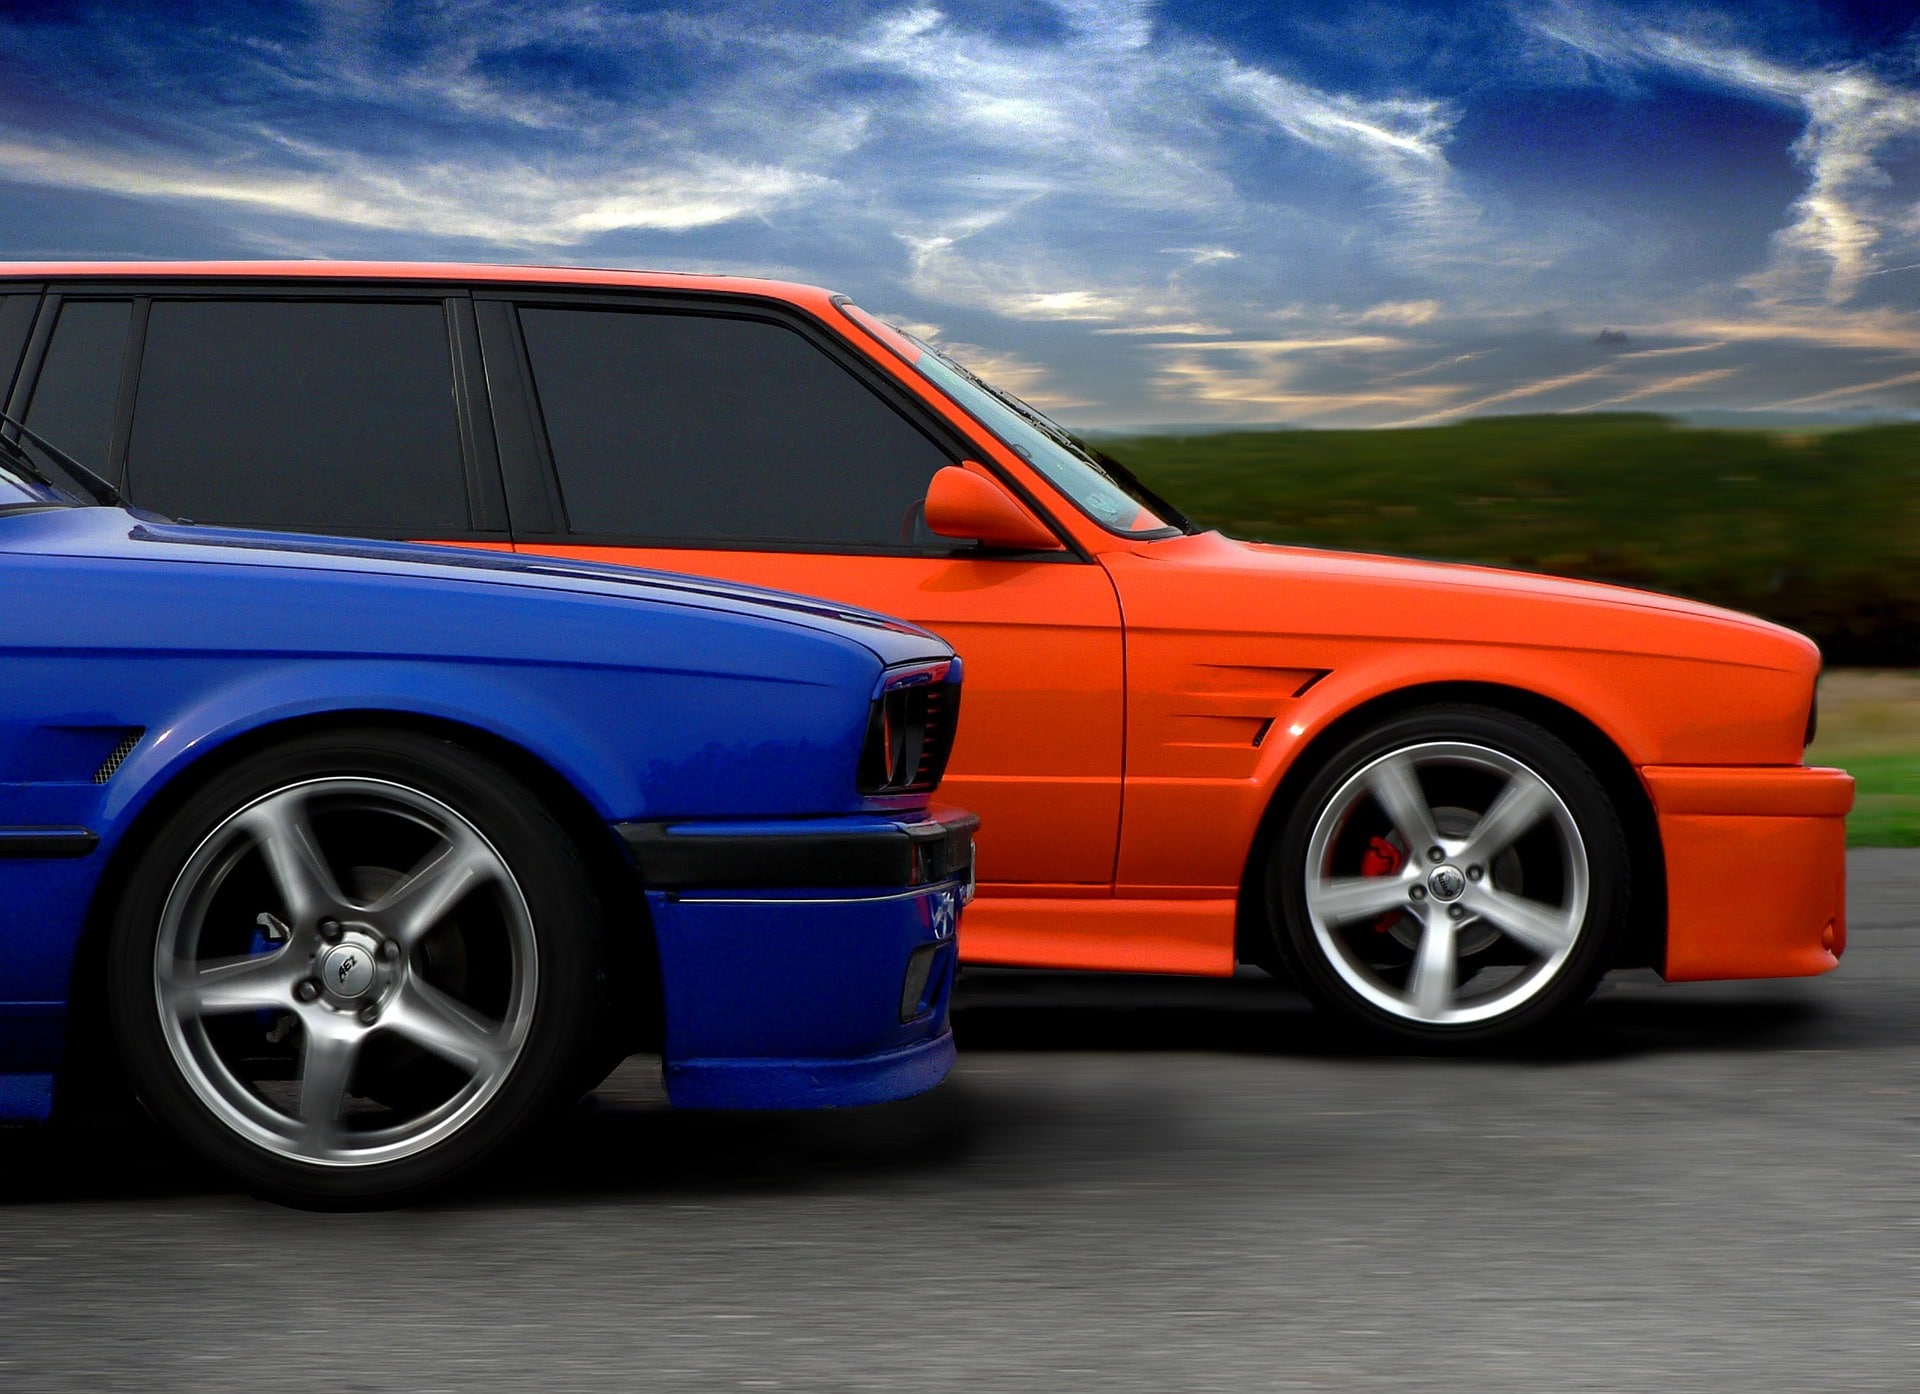 Frente de carros azul e laranja, em estrada com tempo nublado.